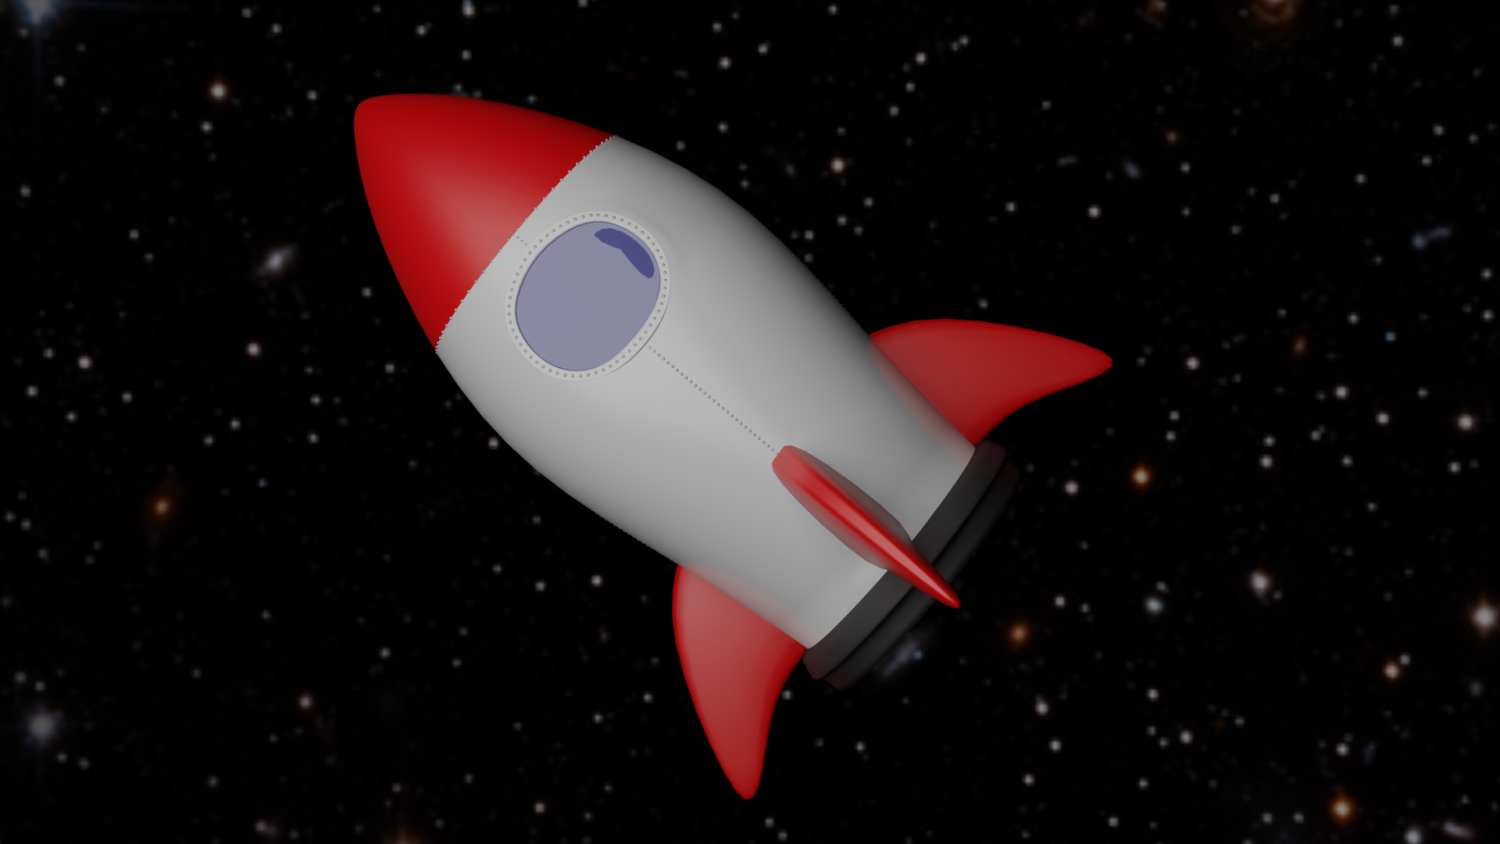 rocket ship modeling in blender 2.8 